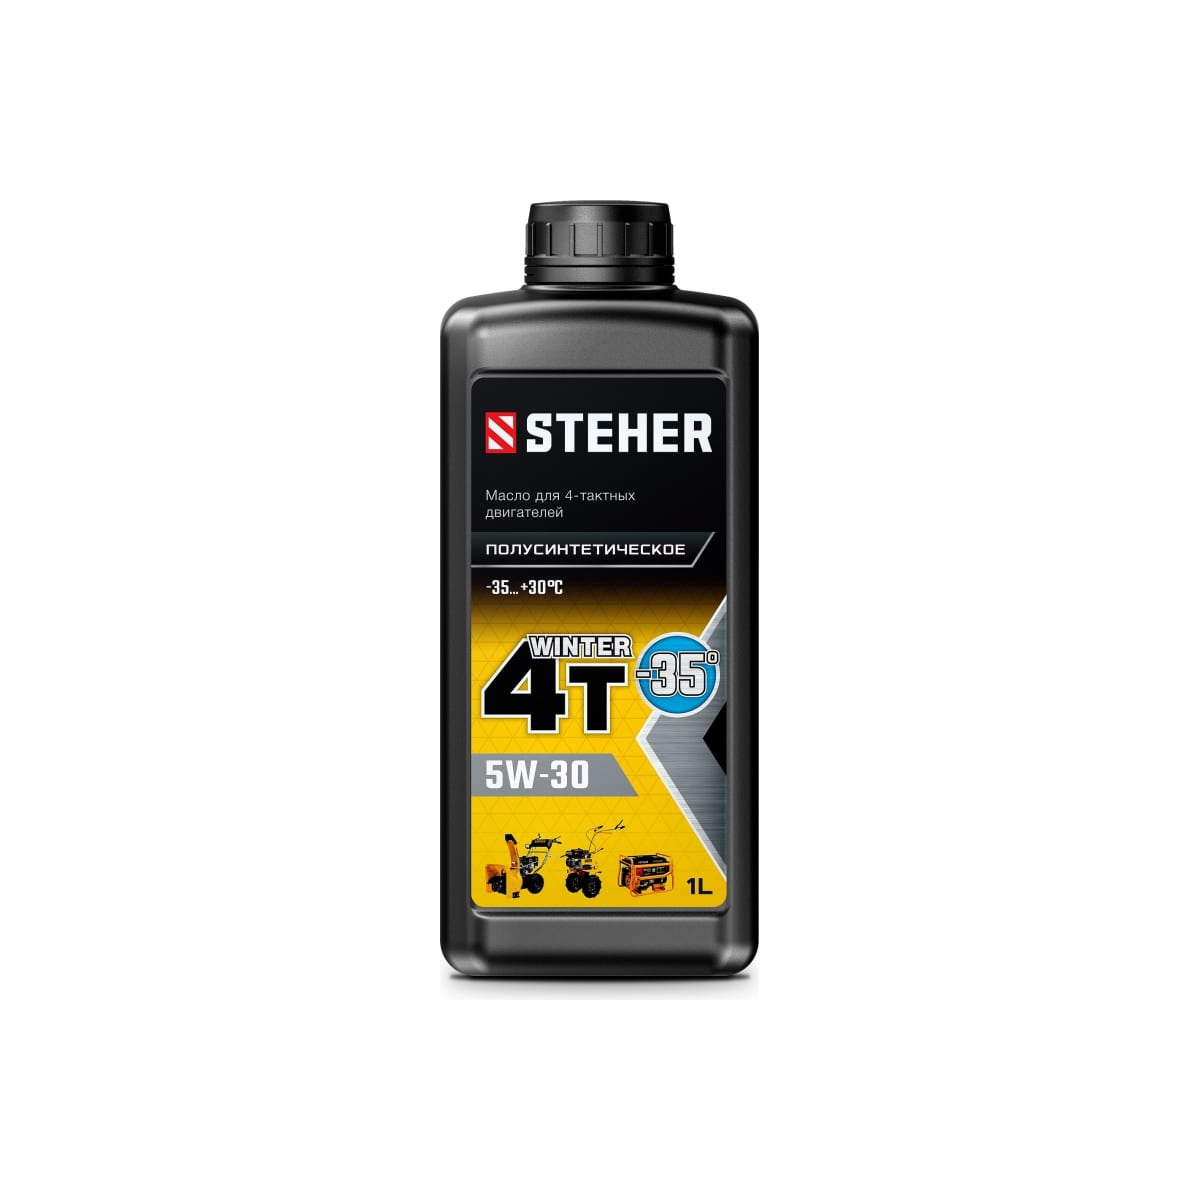 STEHER 4Т-5W30, 1 л, зимнее полусинтетическое масло для 4-тактных двигателей (76012-1) масло зубр 70612 1 4т 5w30 для 4 тактных двигателей зимнее полусинтетическое 1 л